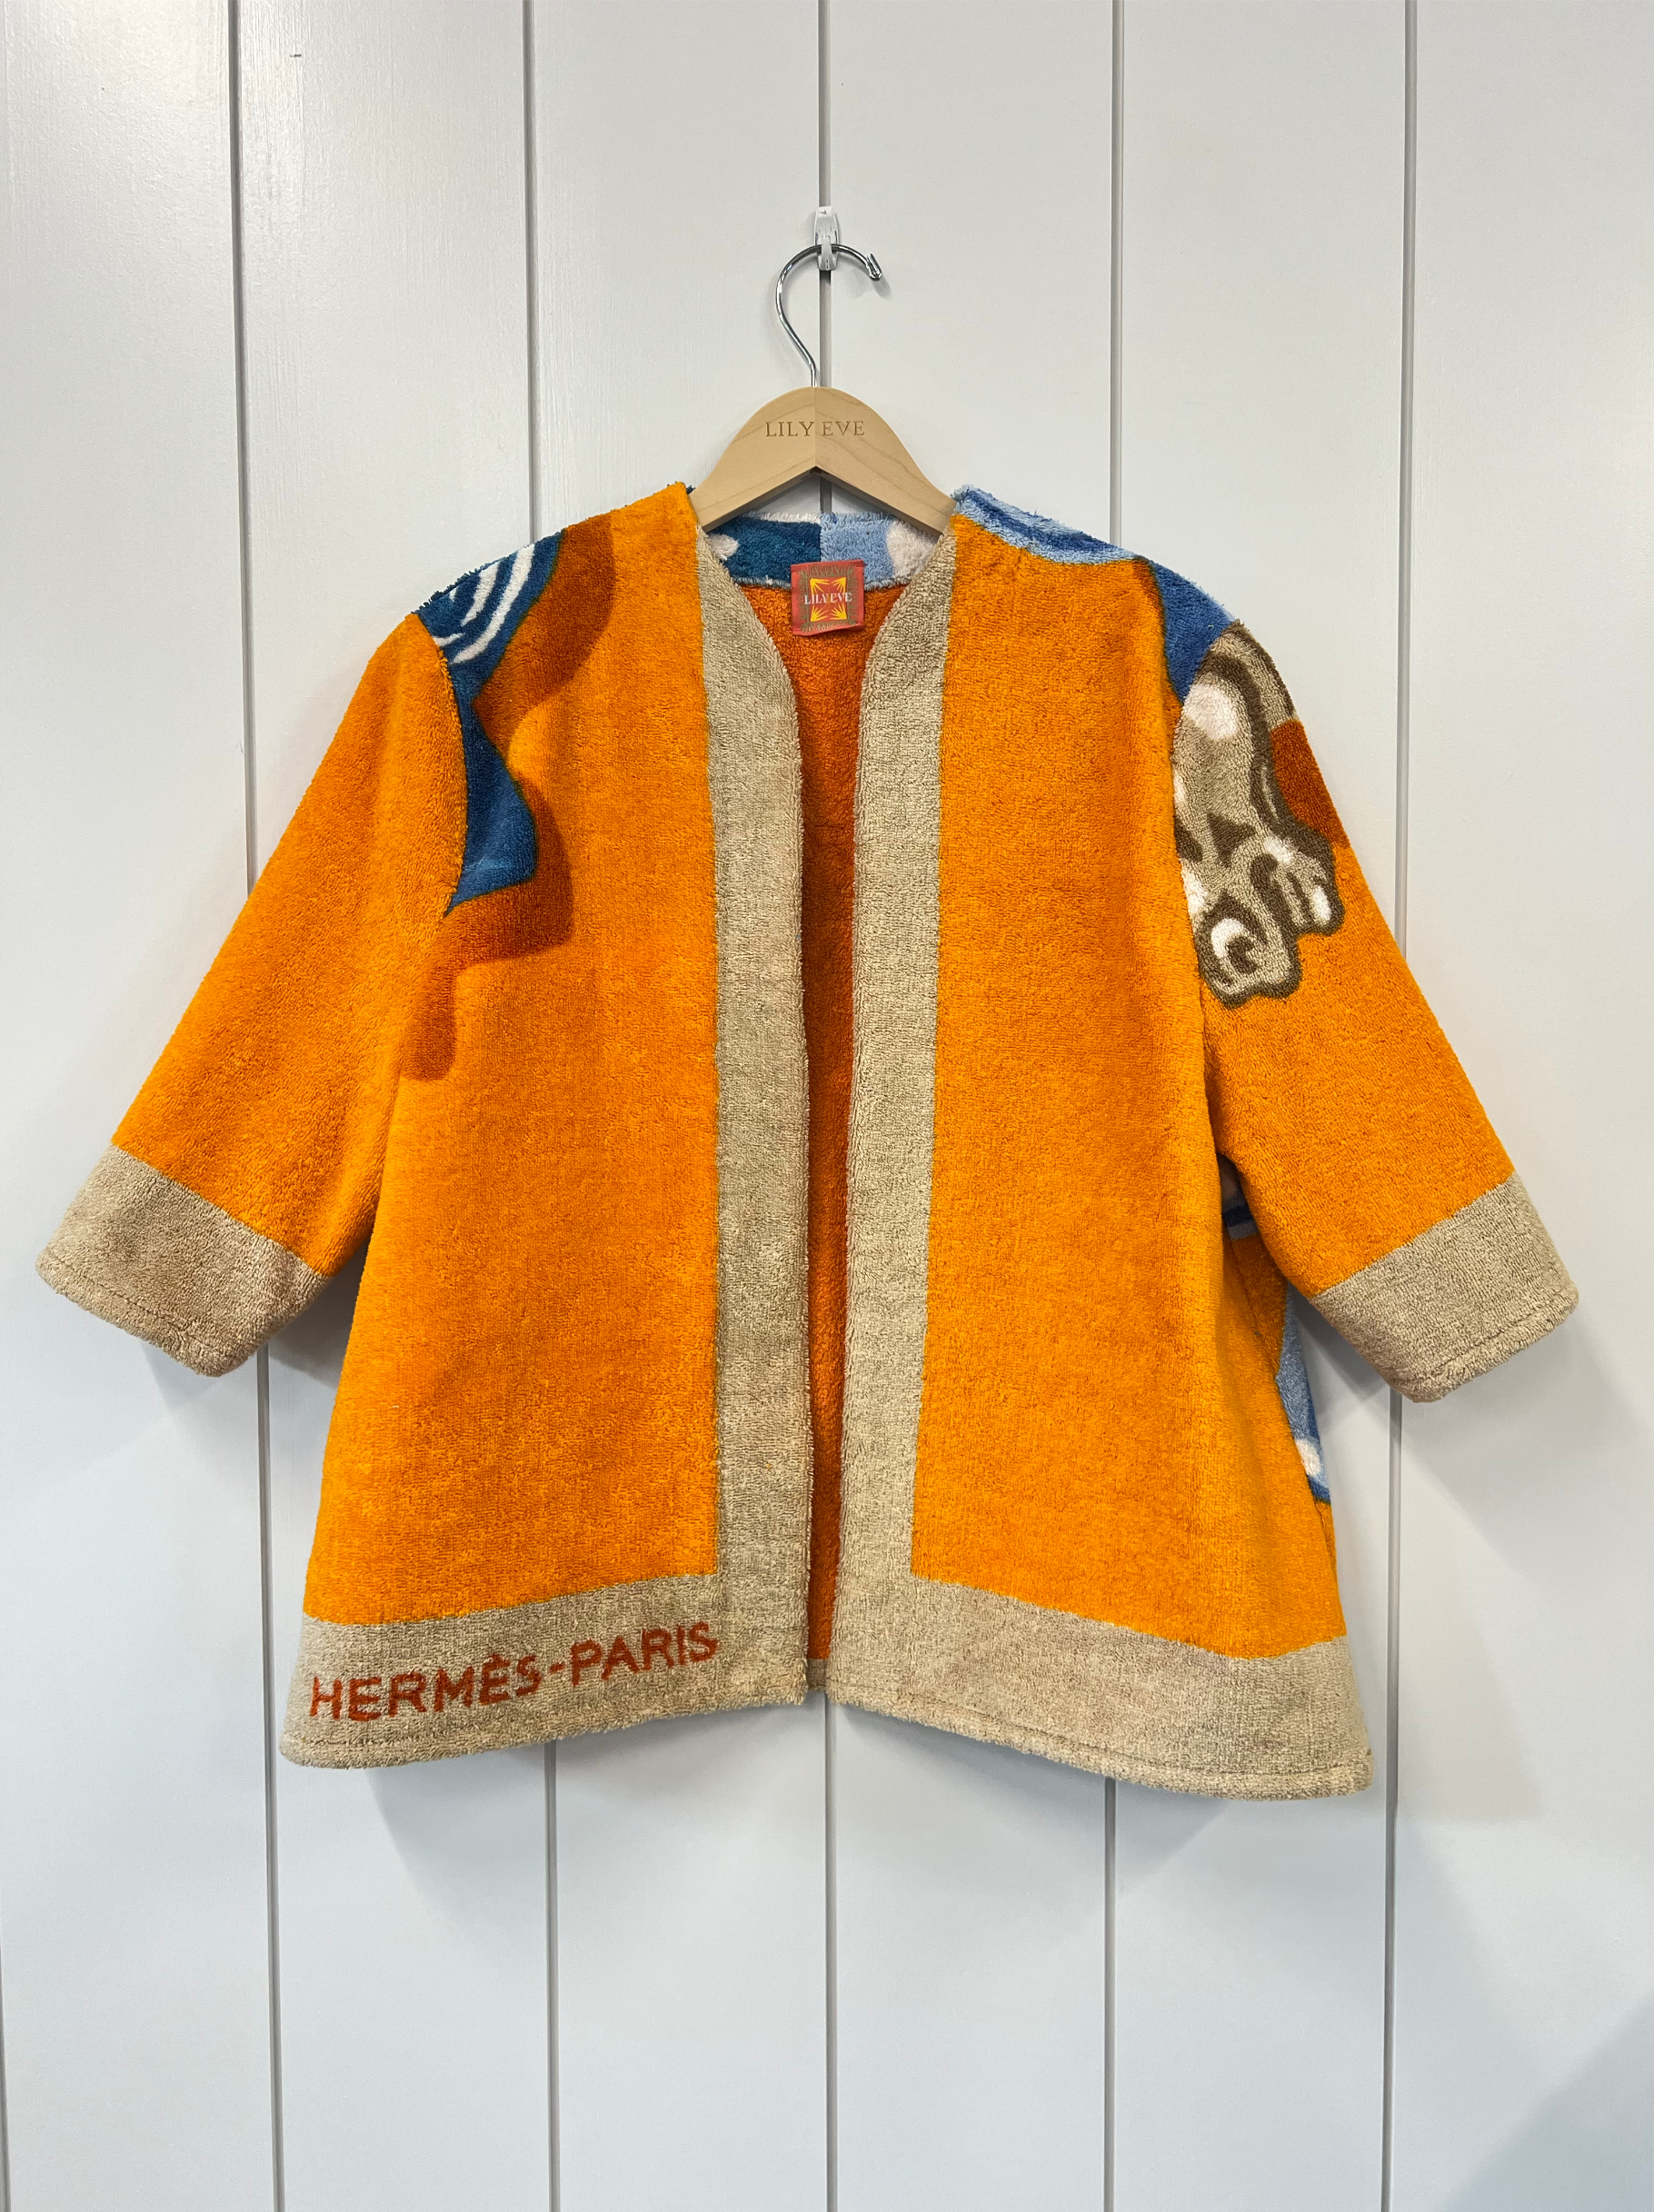 The Orange Horse Jacket